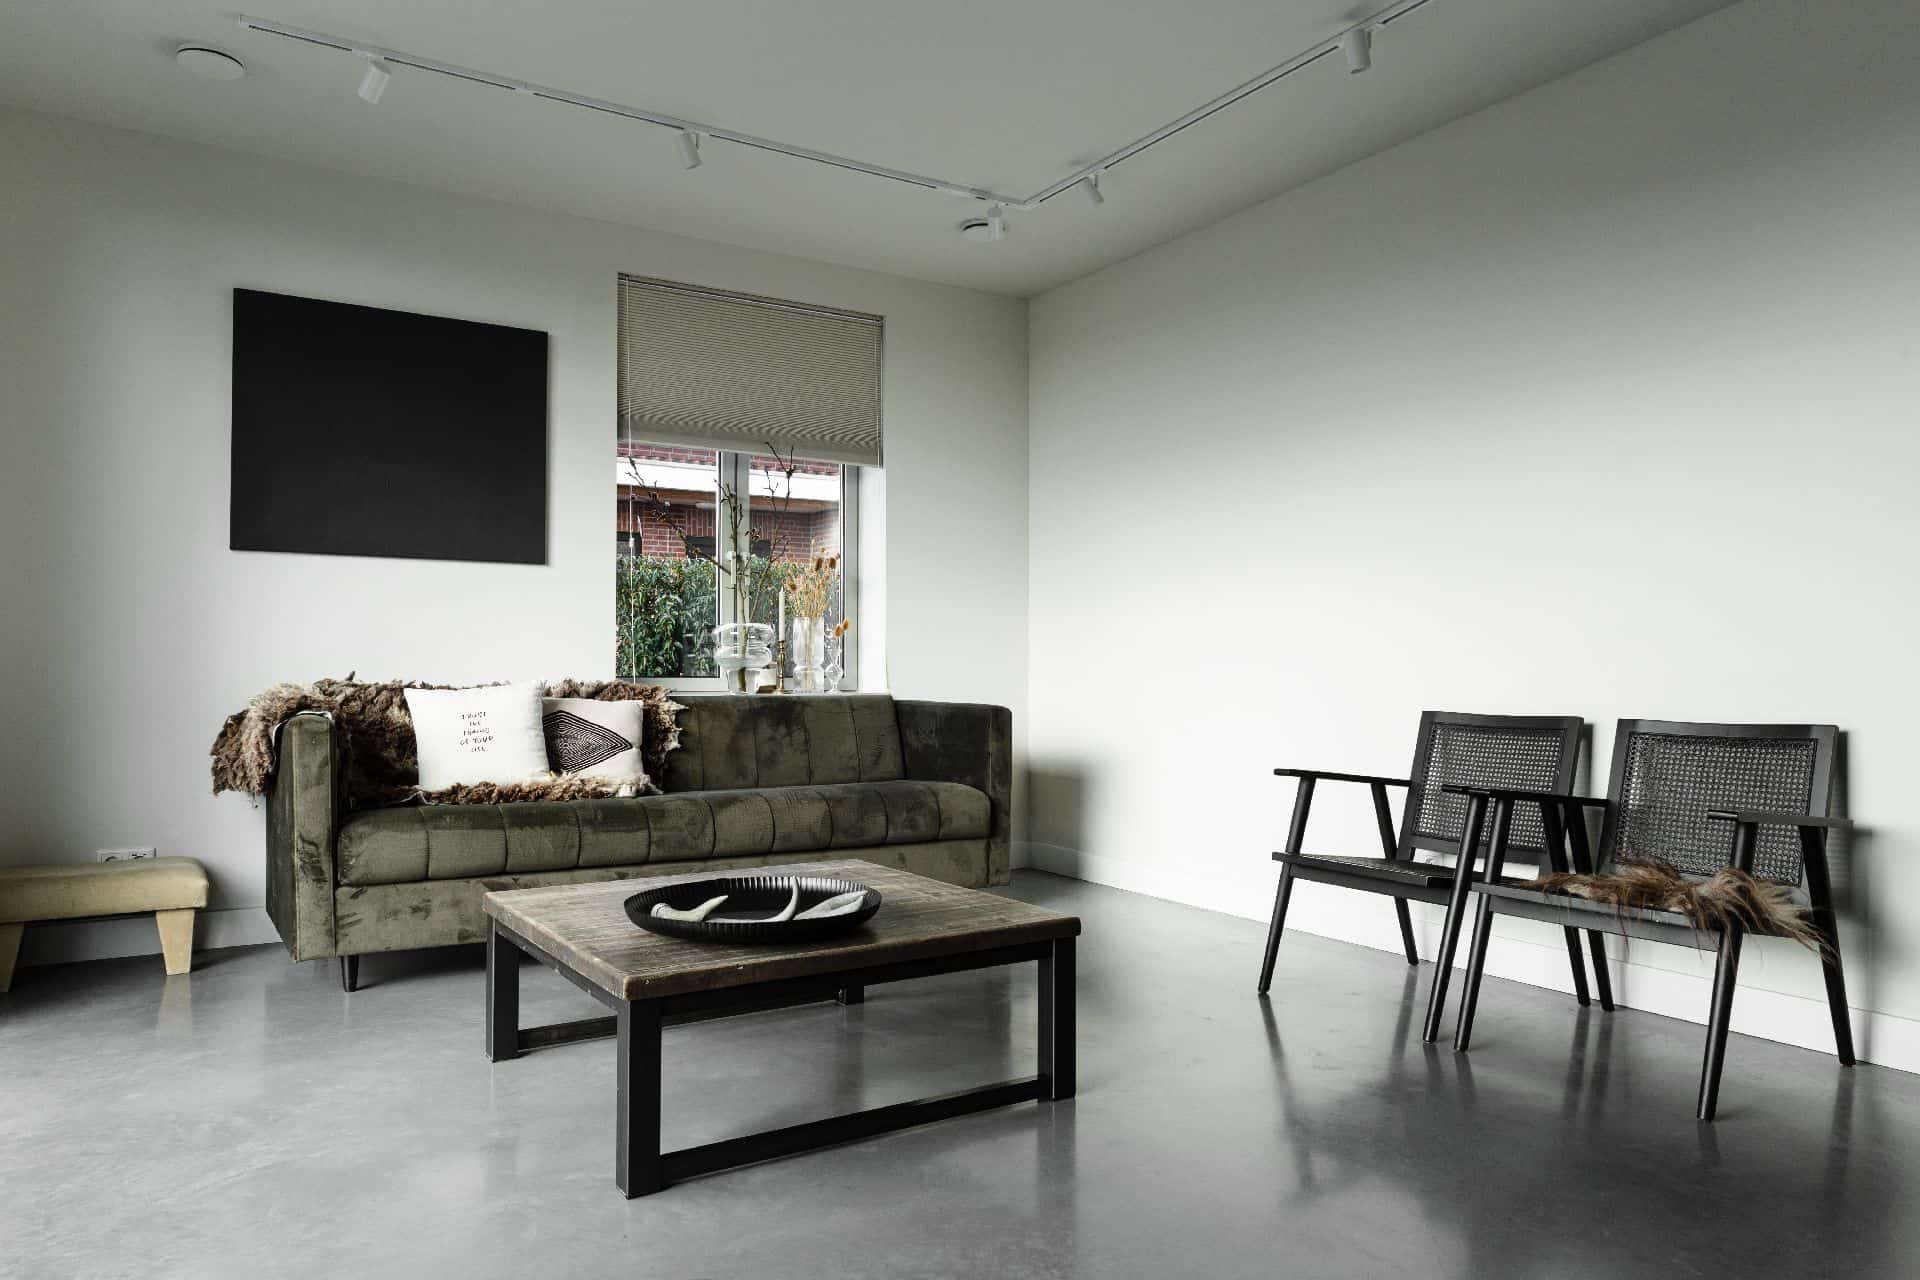 Vrijstaande woning in Brandwijk met een gevlinderde betonvloer in de woonkamer. Hierop staat een groene velvet bank en twee zwarte stoelen.